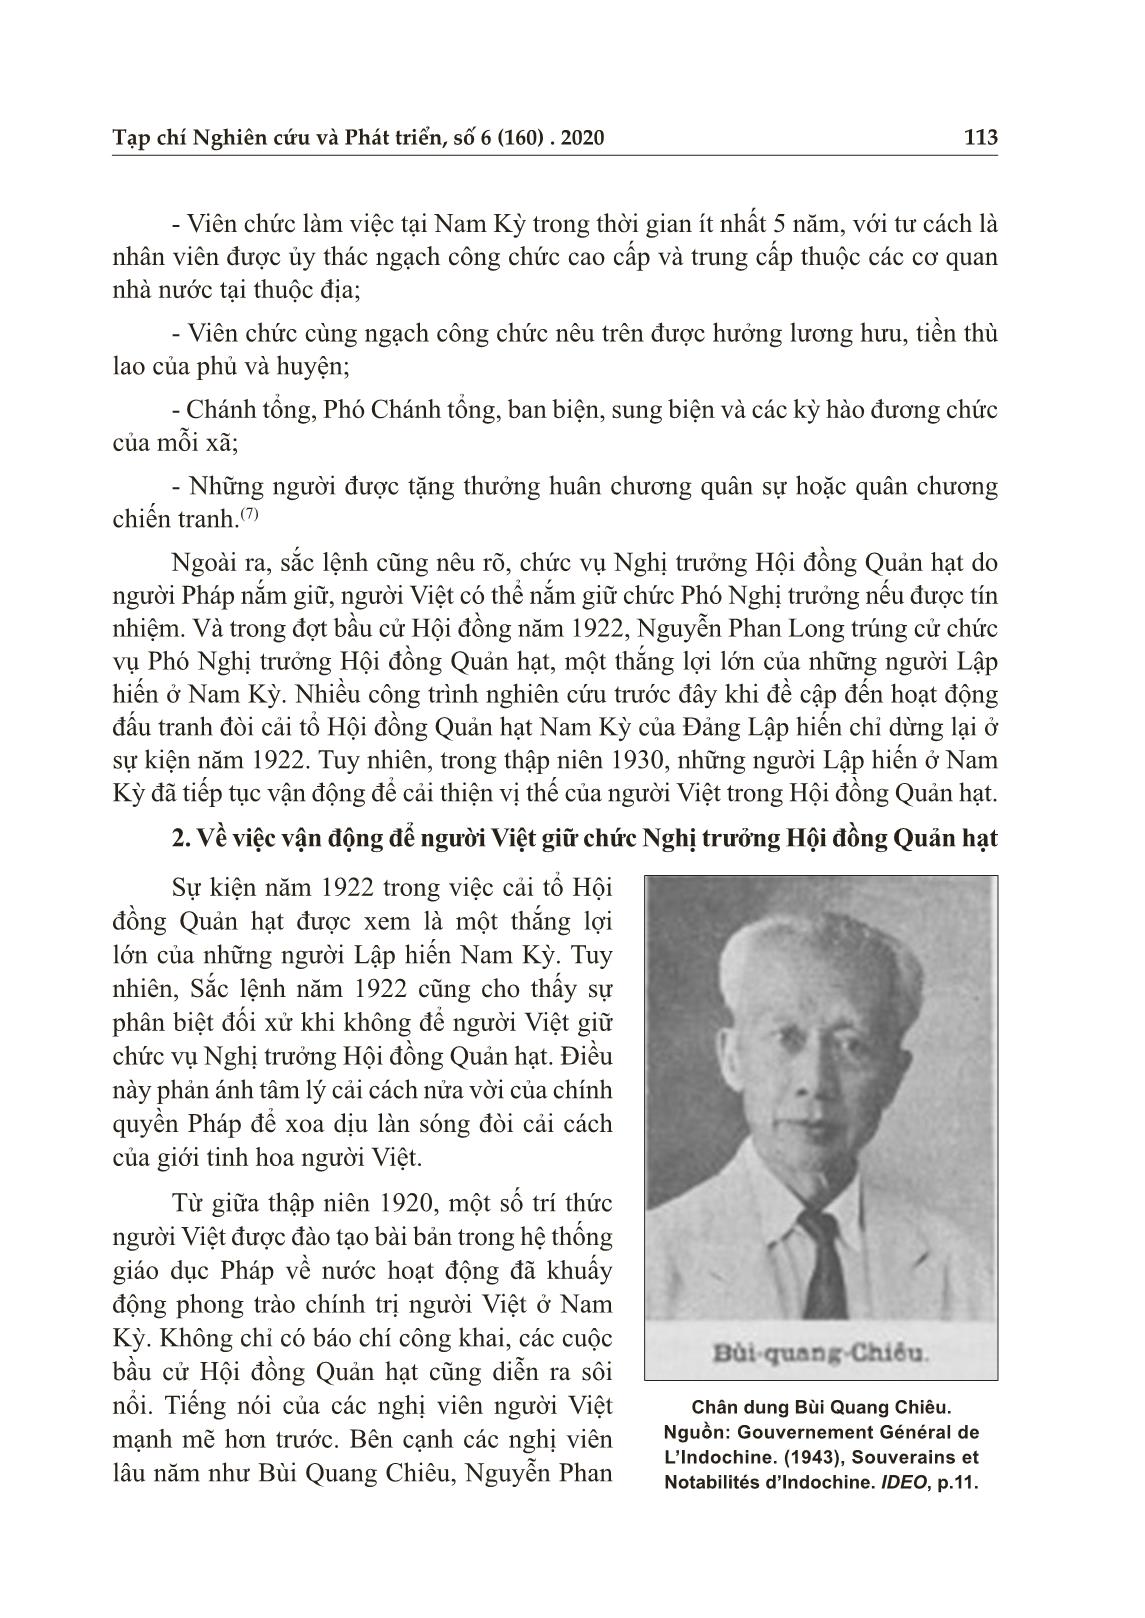 Về việc người Việt giữ chức nghị trưởng hội đồng quản hạt Nam Kỳ qua một vài tư liệu báo chí trang 4